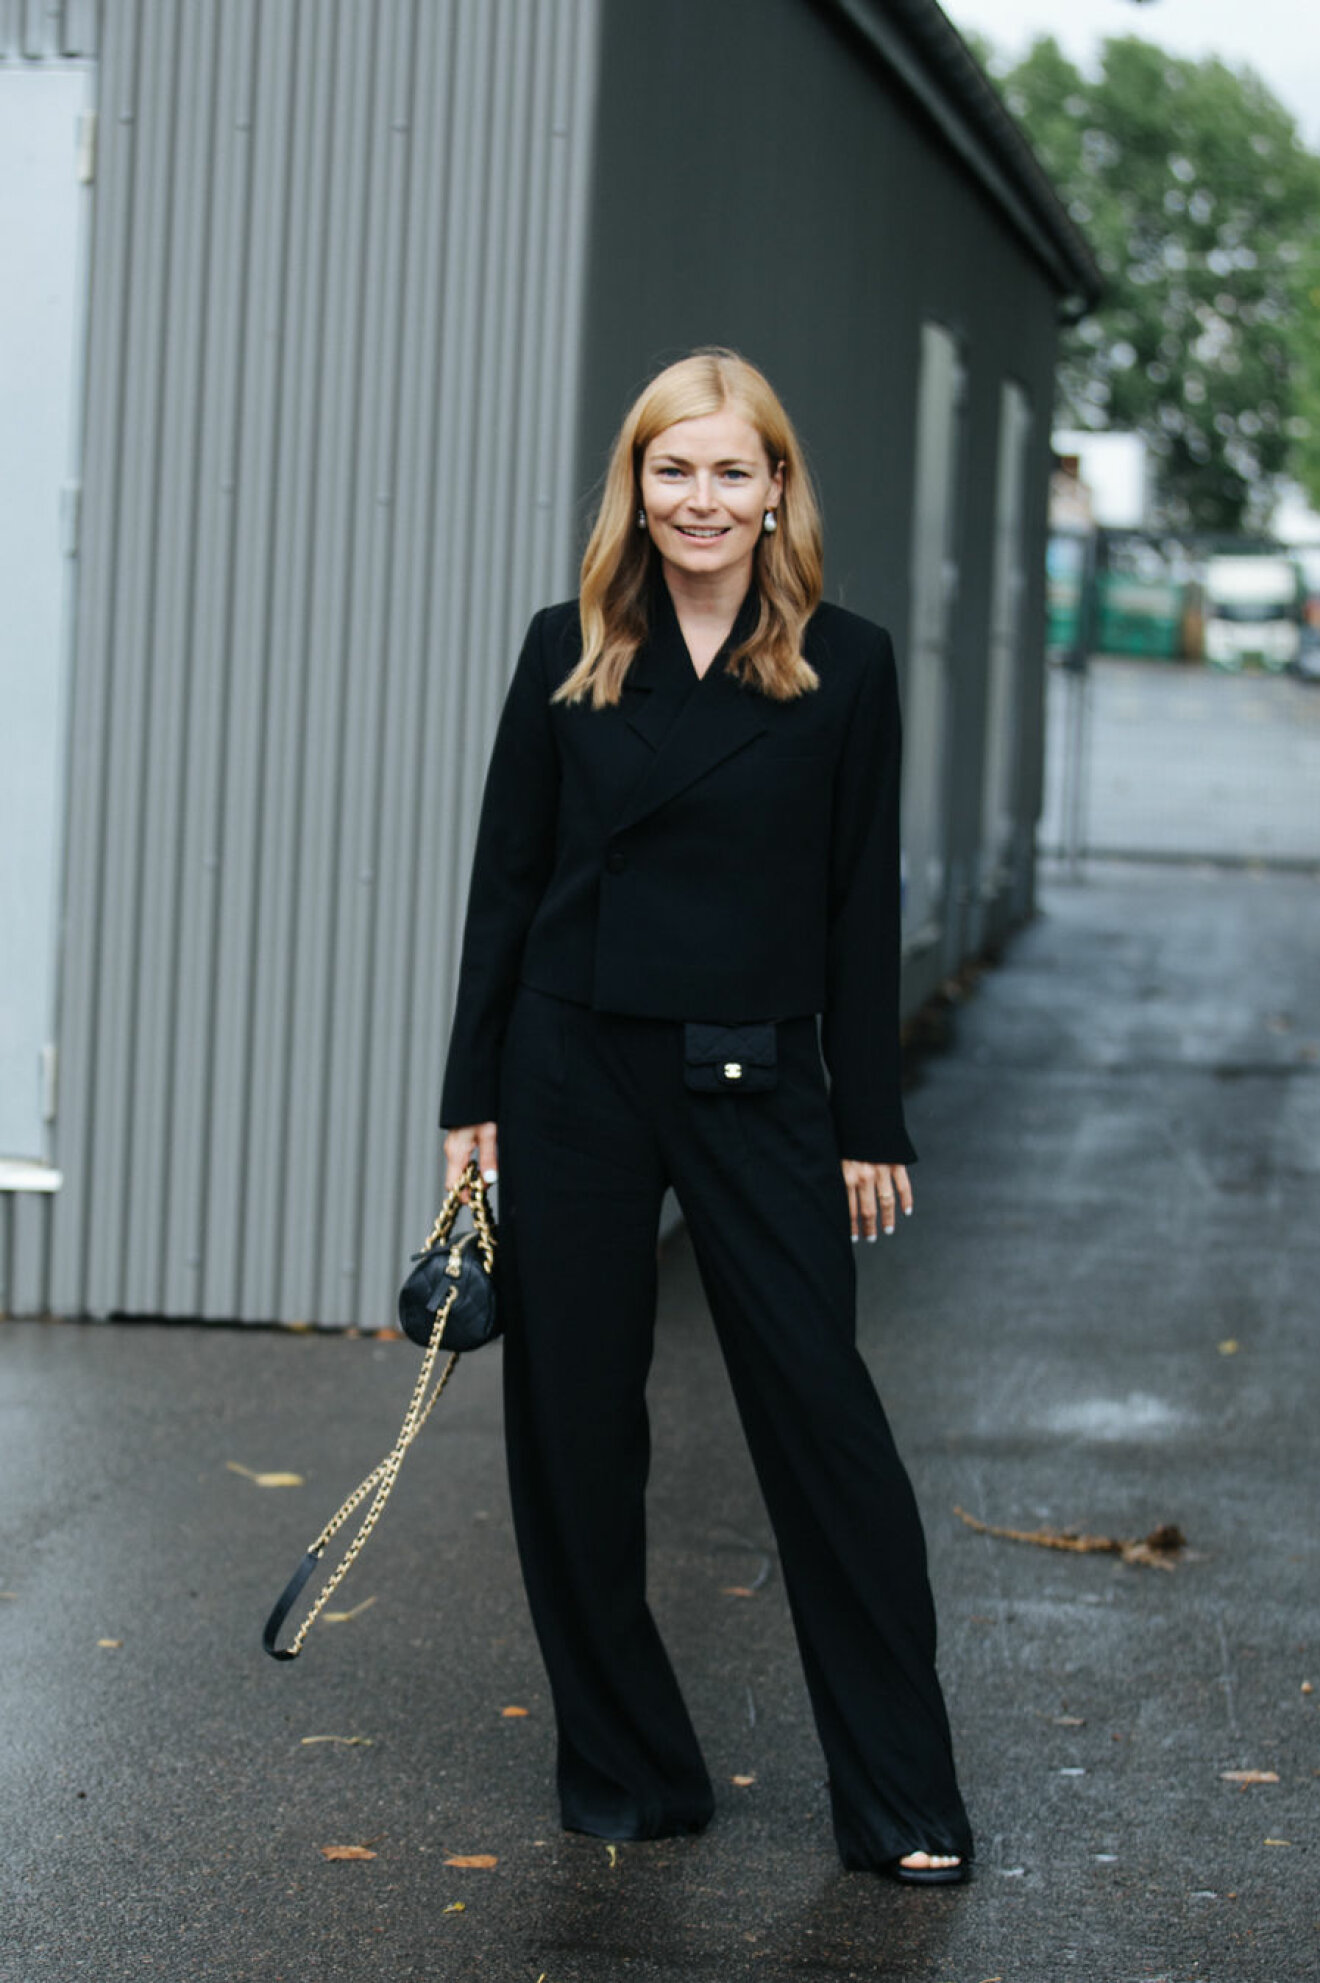 Danska Mie Juel, tidigare redaktör på danska ELLE, bär upp den svarta kostymen.